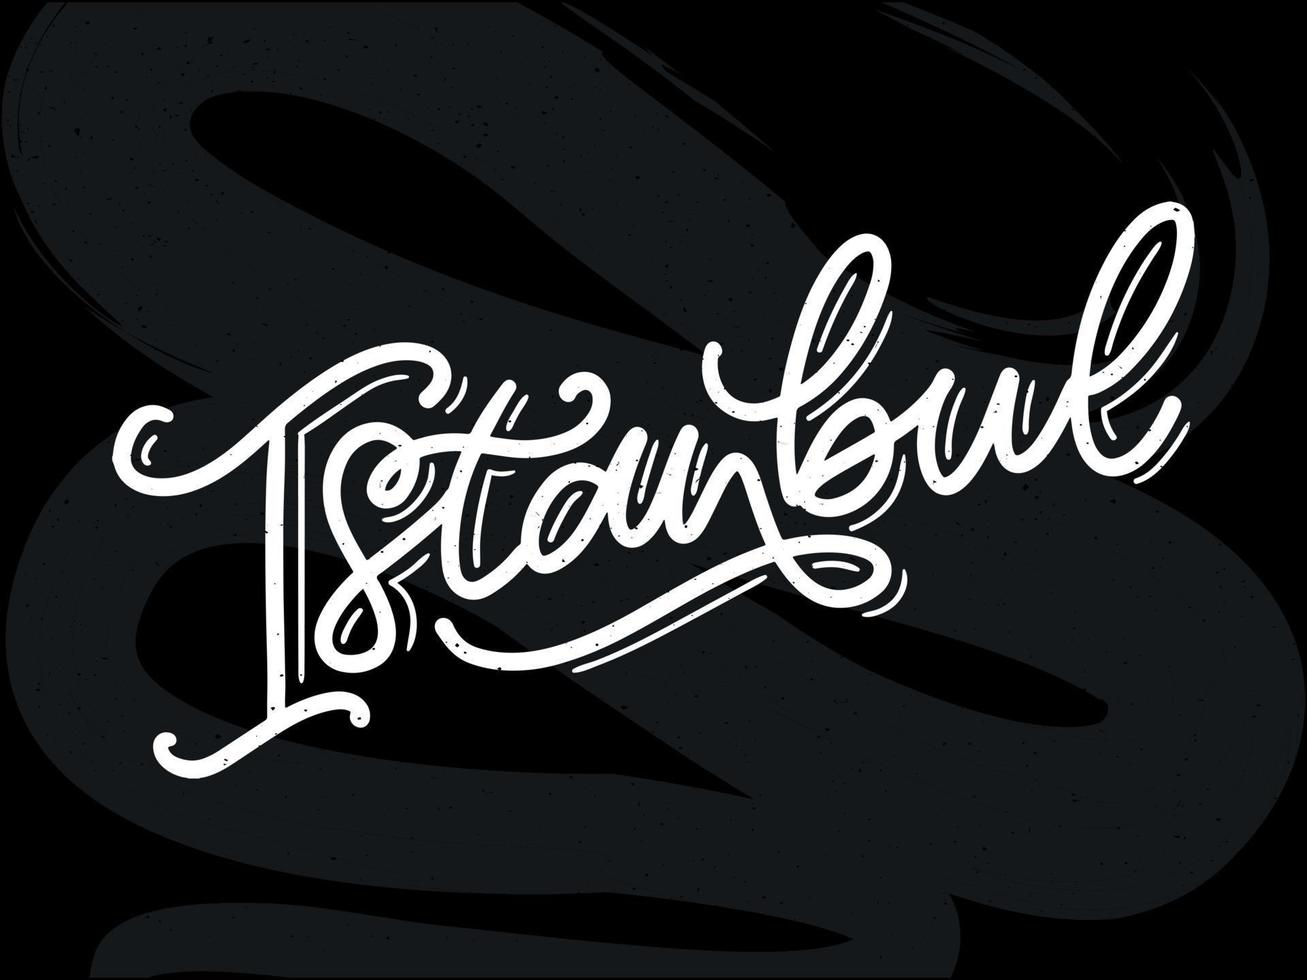 istanbul. hand bokstäver. vektor logotyp för istanbul i svart färg med måsar på vit bakgrund. souvenirprodukter, banneremblem, reseblogg sociala medier, broschyr, flyer. digital illustration.